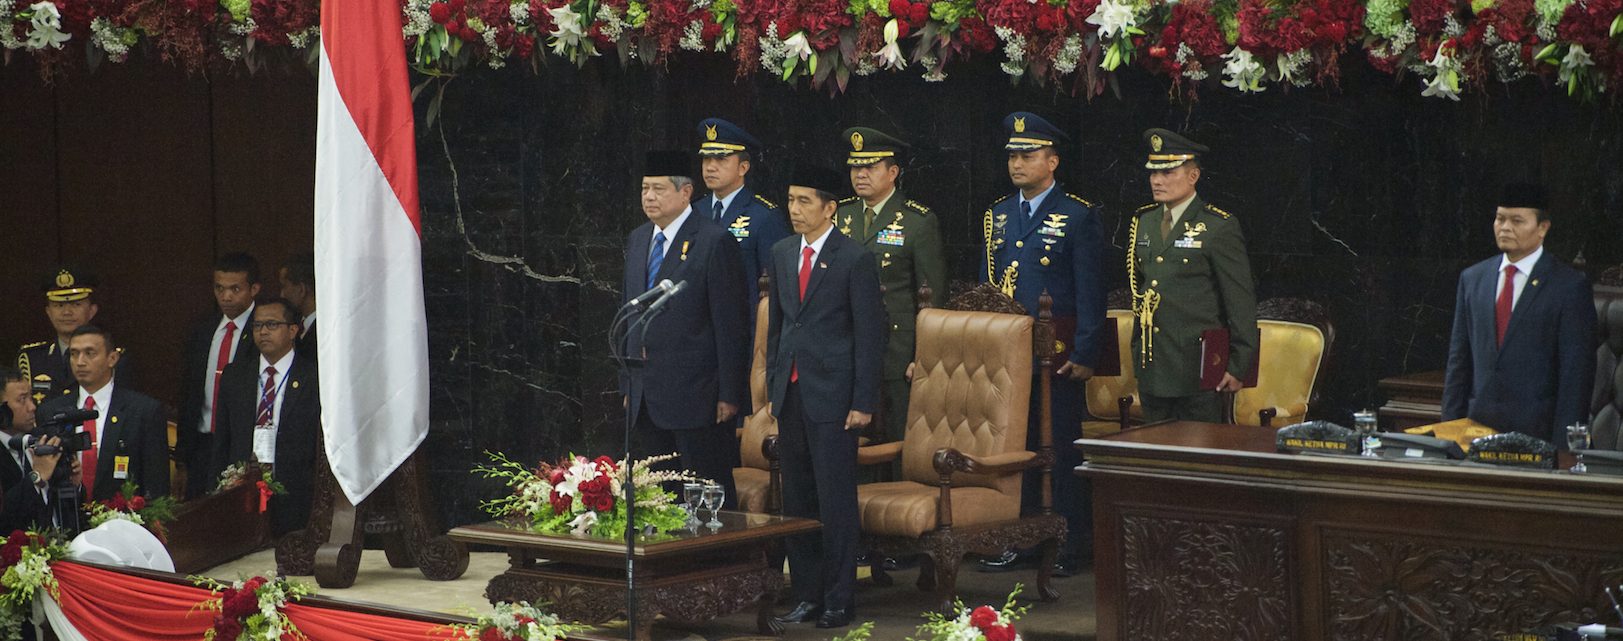 Le président indonésien Joko "Jokowi" Widodo" le jour de sa première investiture, aux côtés de son prédécesseur Susilo Bambang Yudhoyono, le 20 octobre 2014 à Jakarta. (Source : Wikimedia Commons)